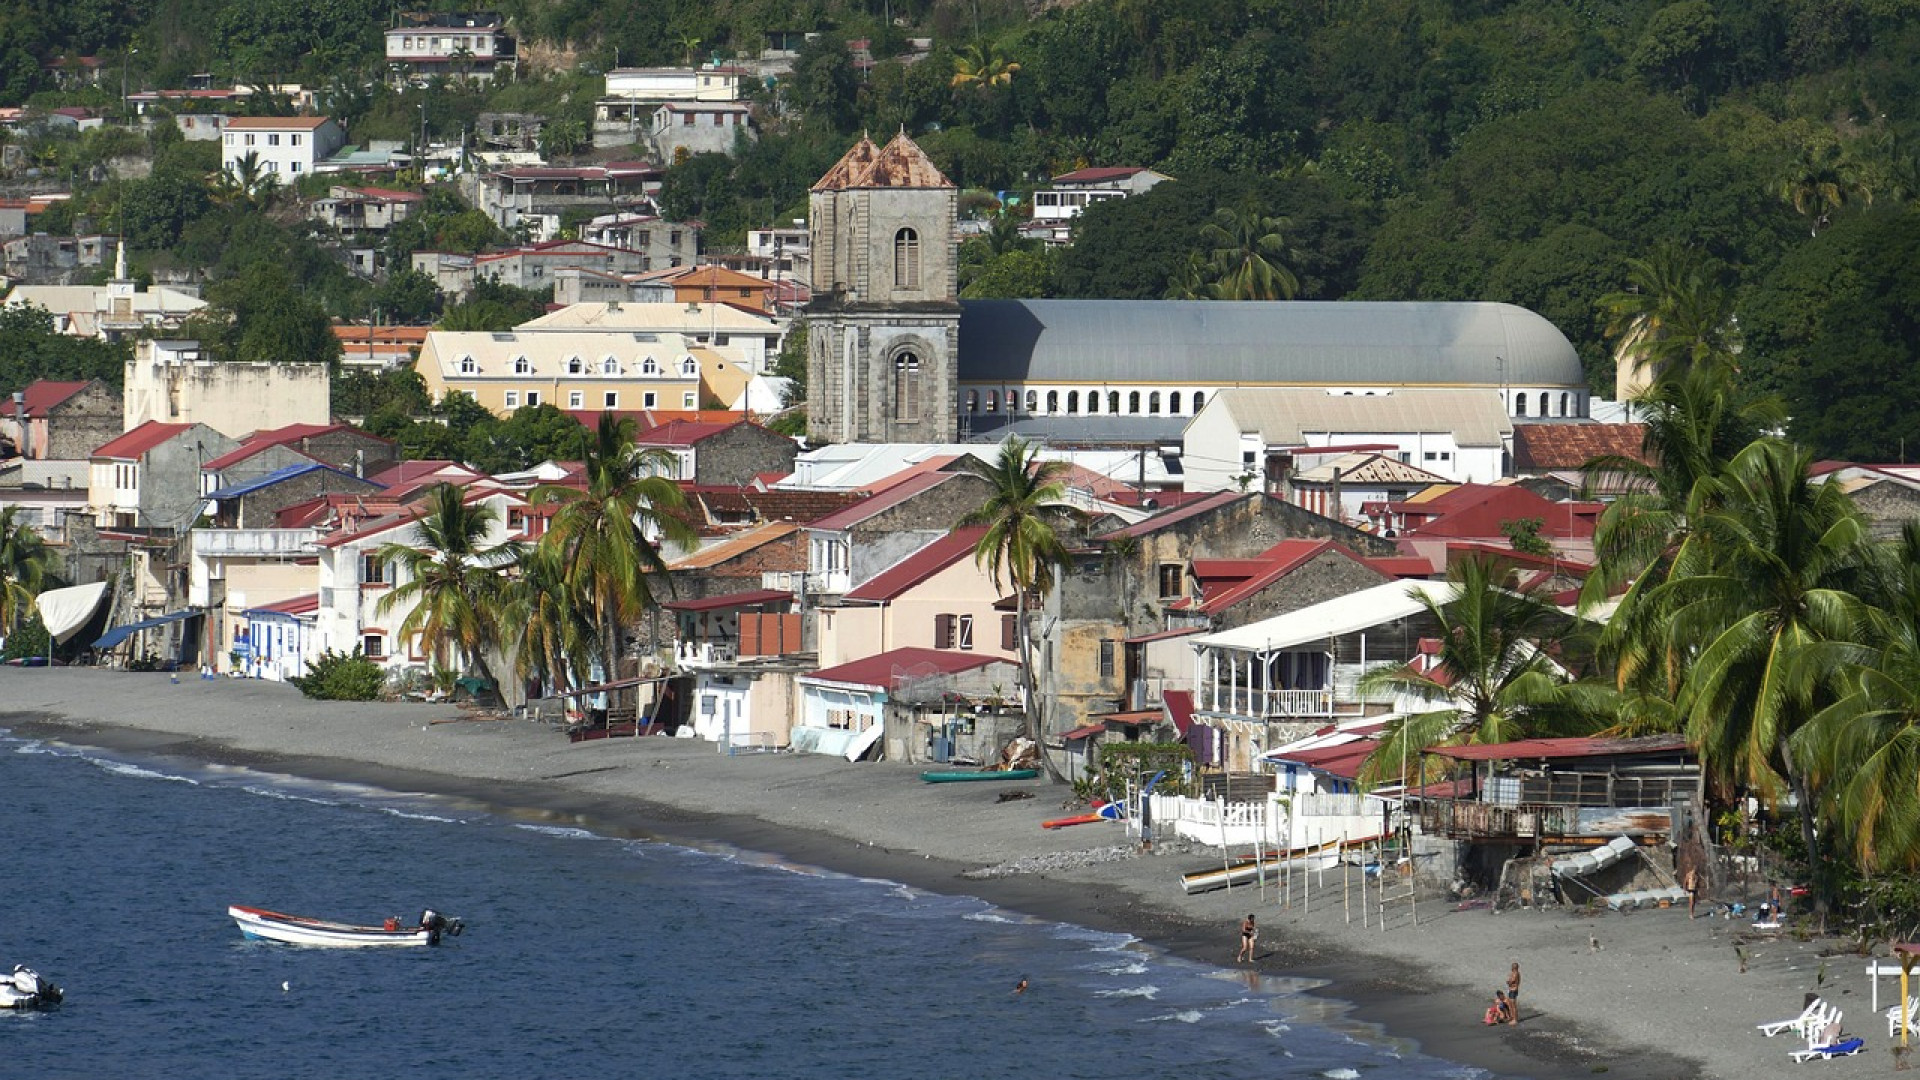 Quels sont les endroits les plus populaires à voir lorsqu'on loue une voiture en Martinique ?